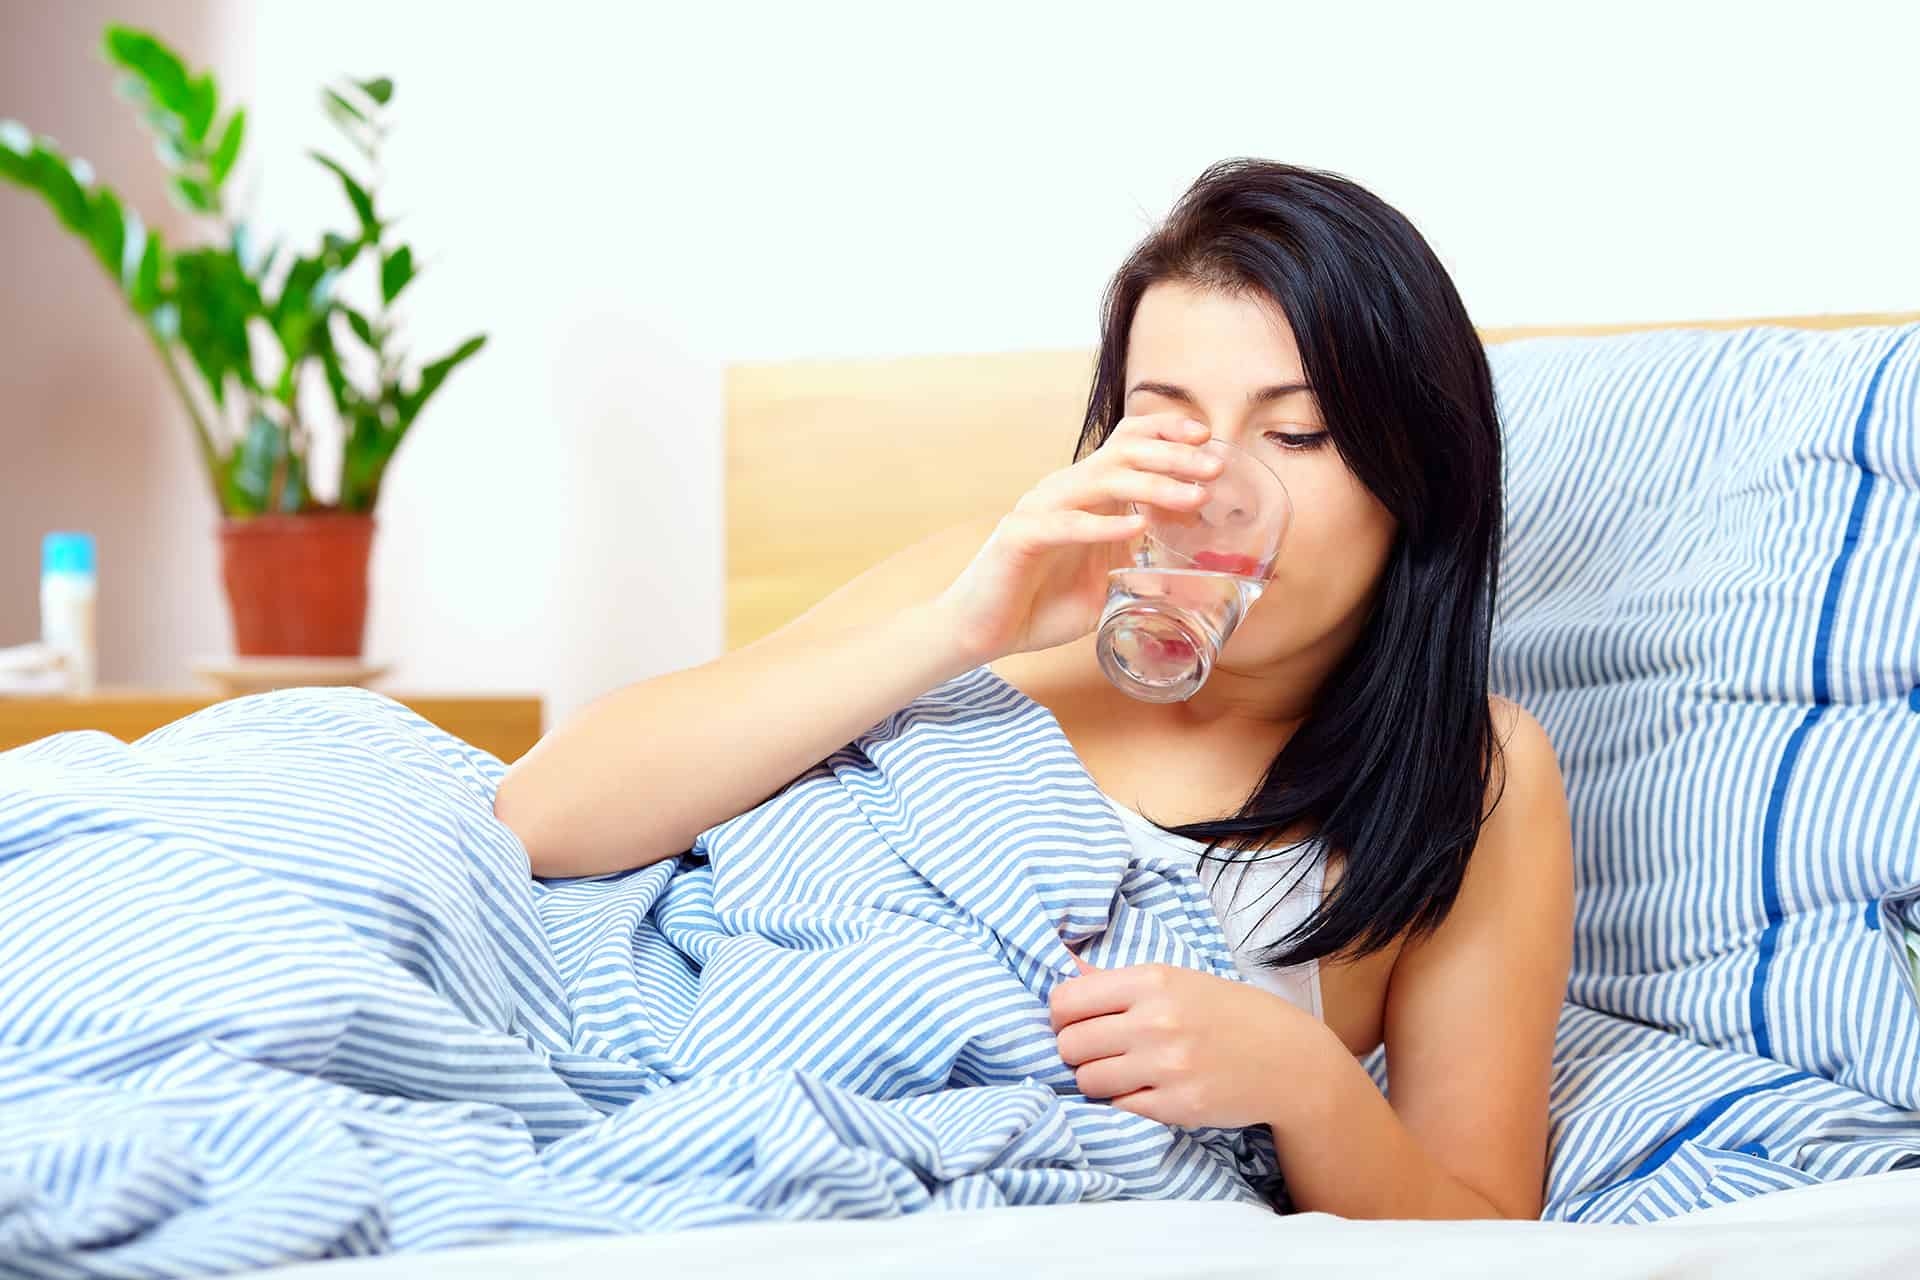 فوائد عديدة لن تصدقها.. هذا ما سيحدث لجسمك عند شرب الماء قبل النوم وفق أحدث الدراسات